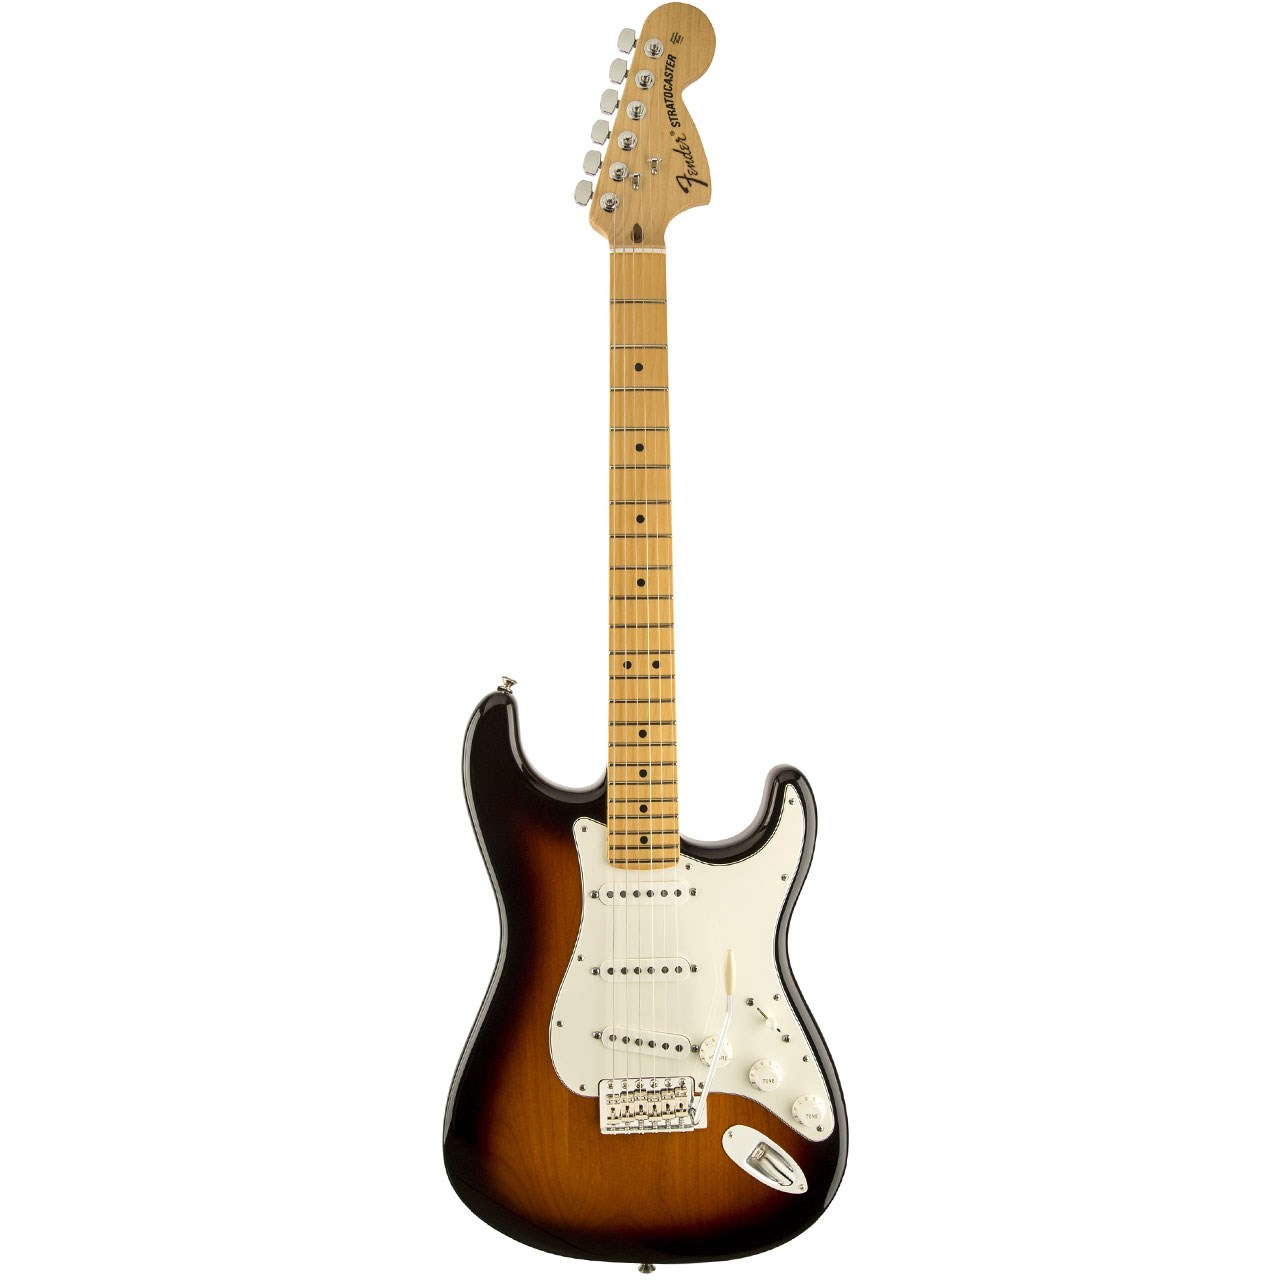 گیتار الکتریک فندر مدل American Special Stratocaster MN Sunburst